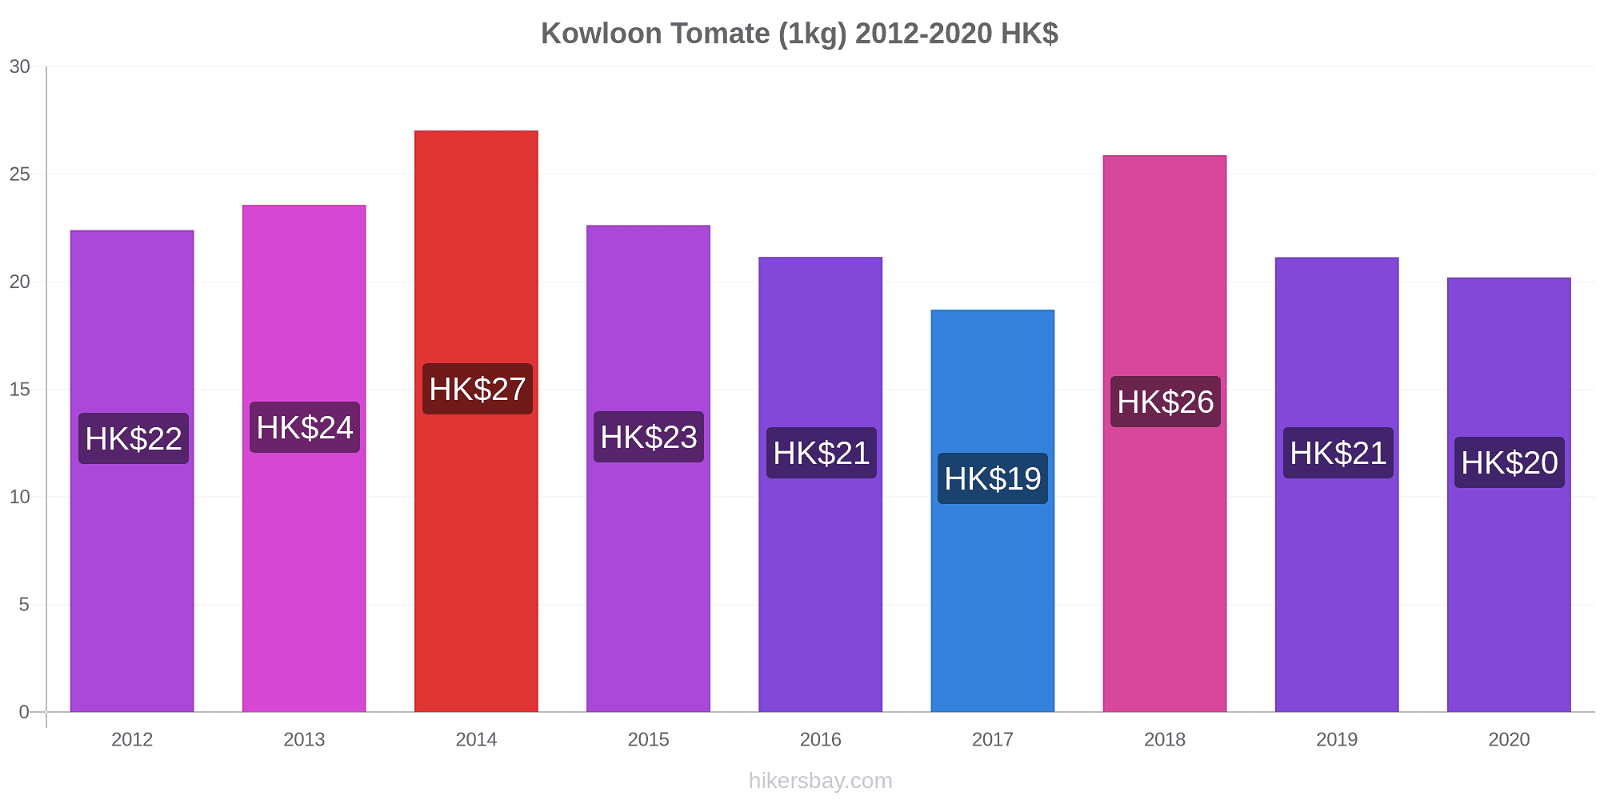 Kowloon changements de prix Tomate (1kg) hikersbay.com